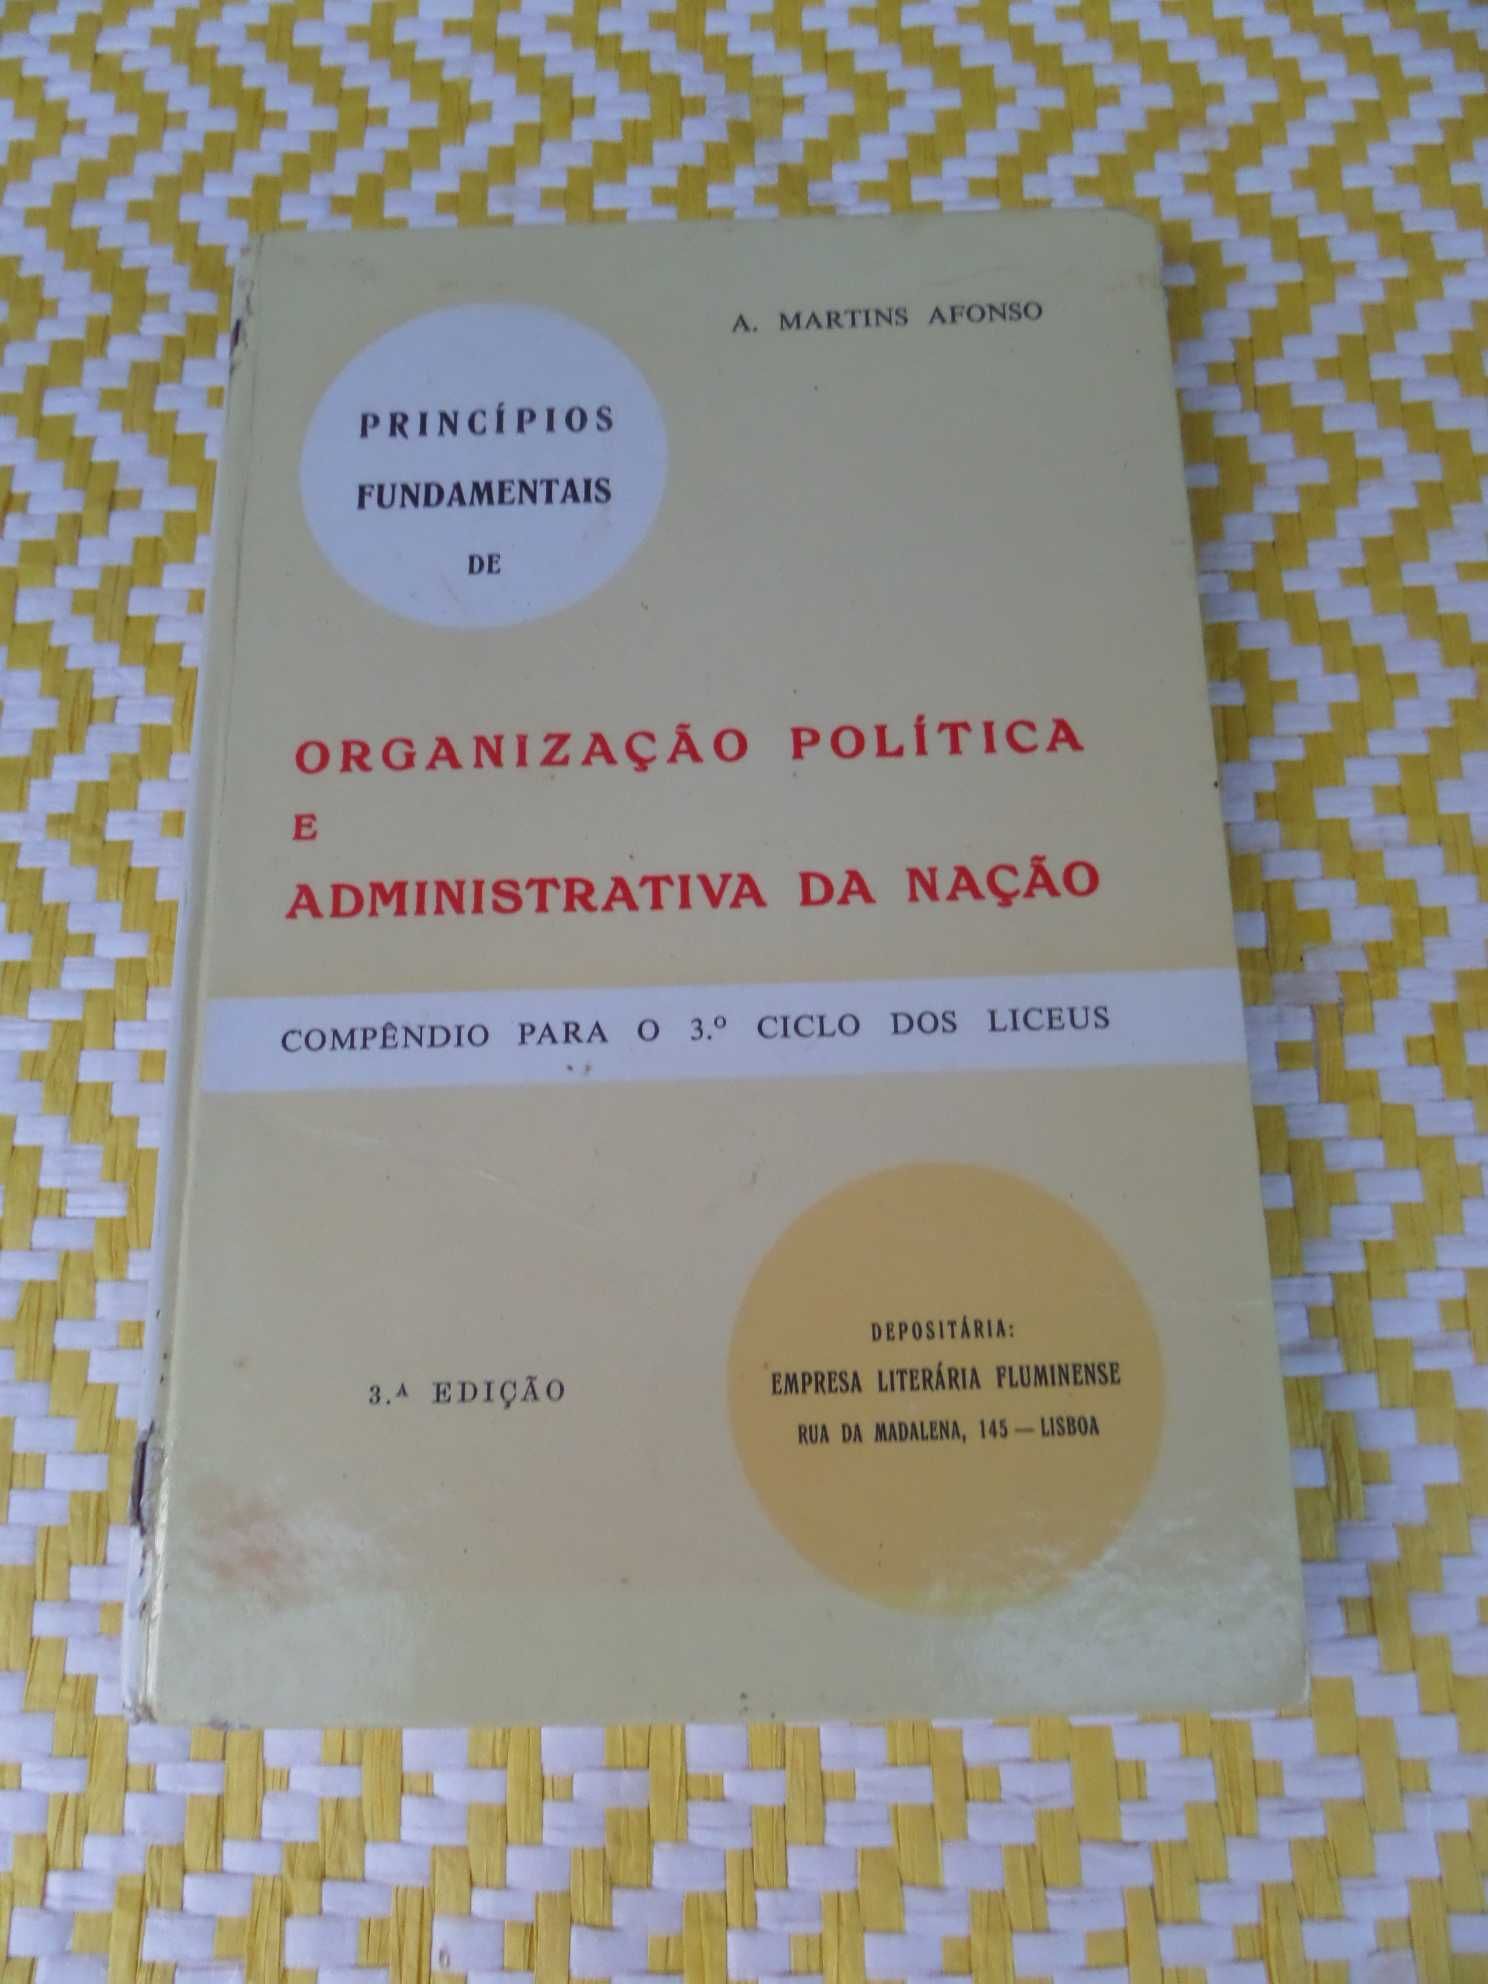 Organização Política E Administrativa Da Nação
A. Martins Afonso